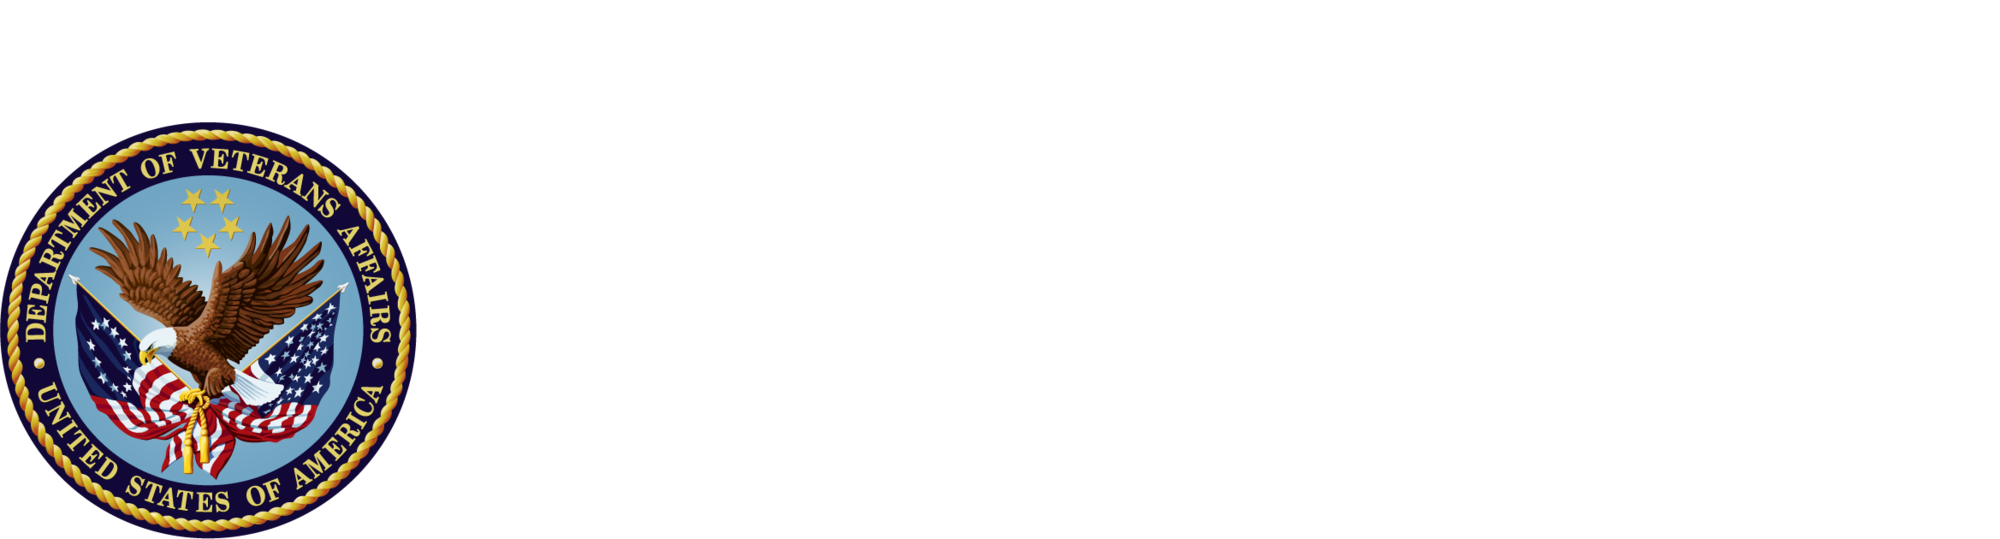 ChooseVA logo